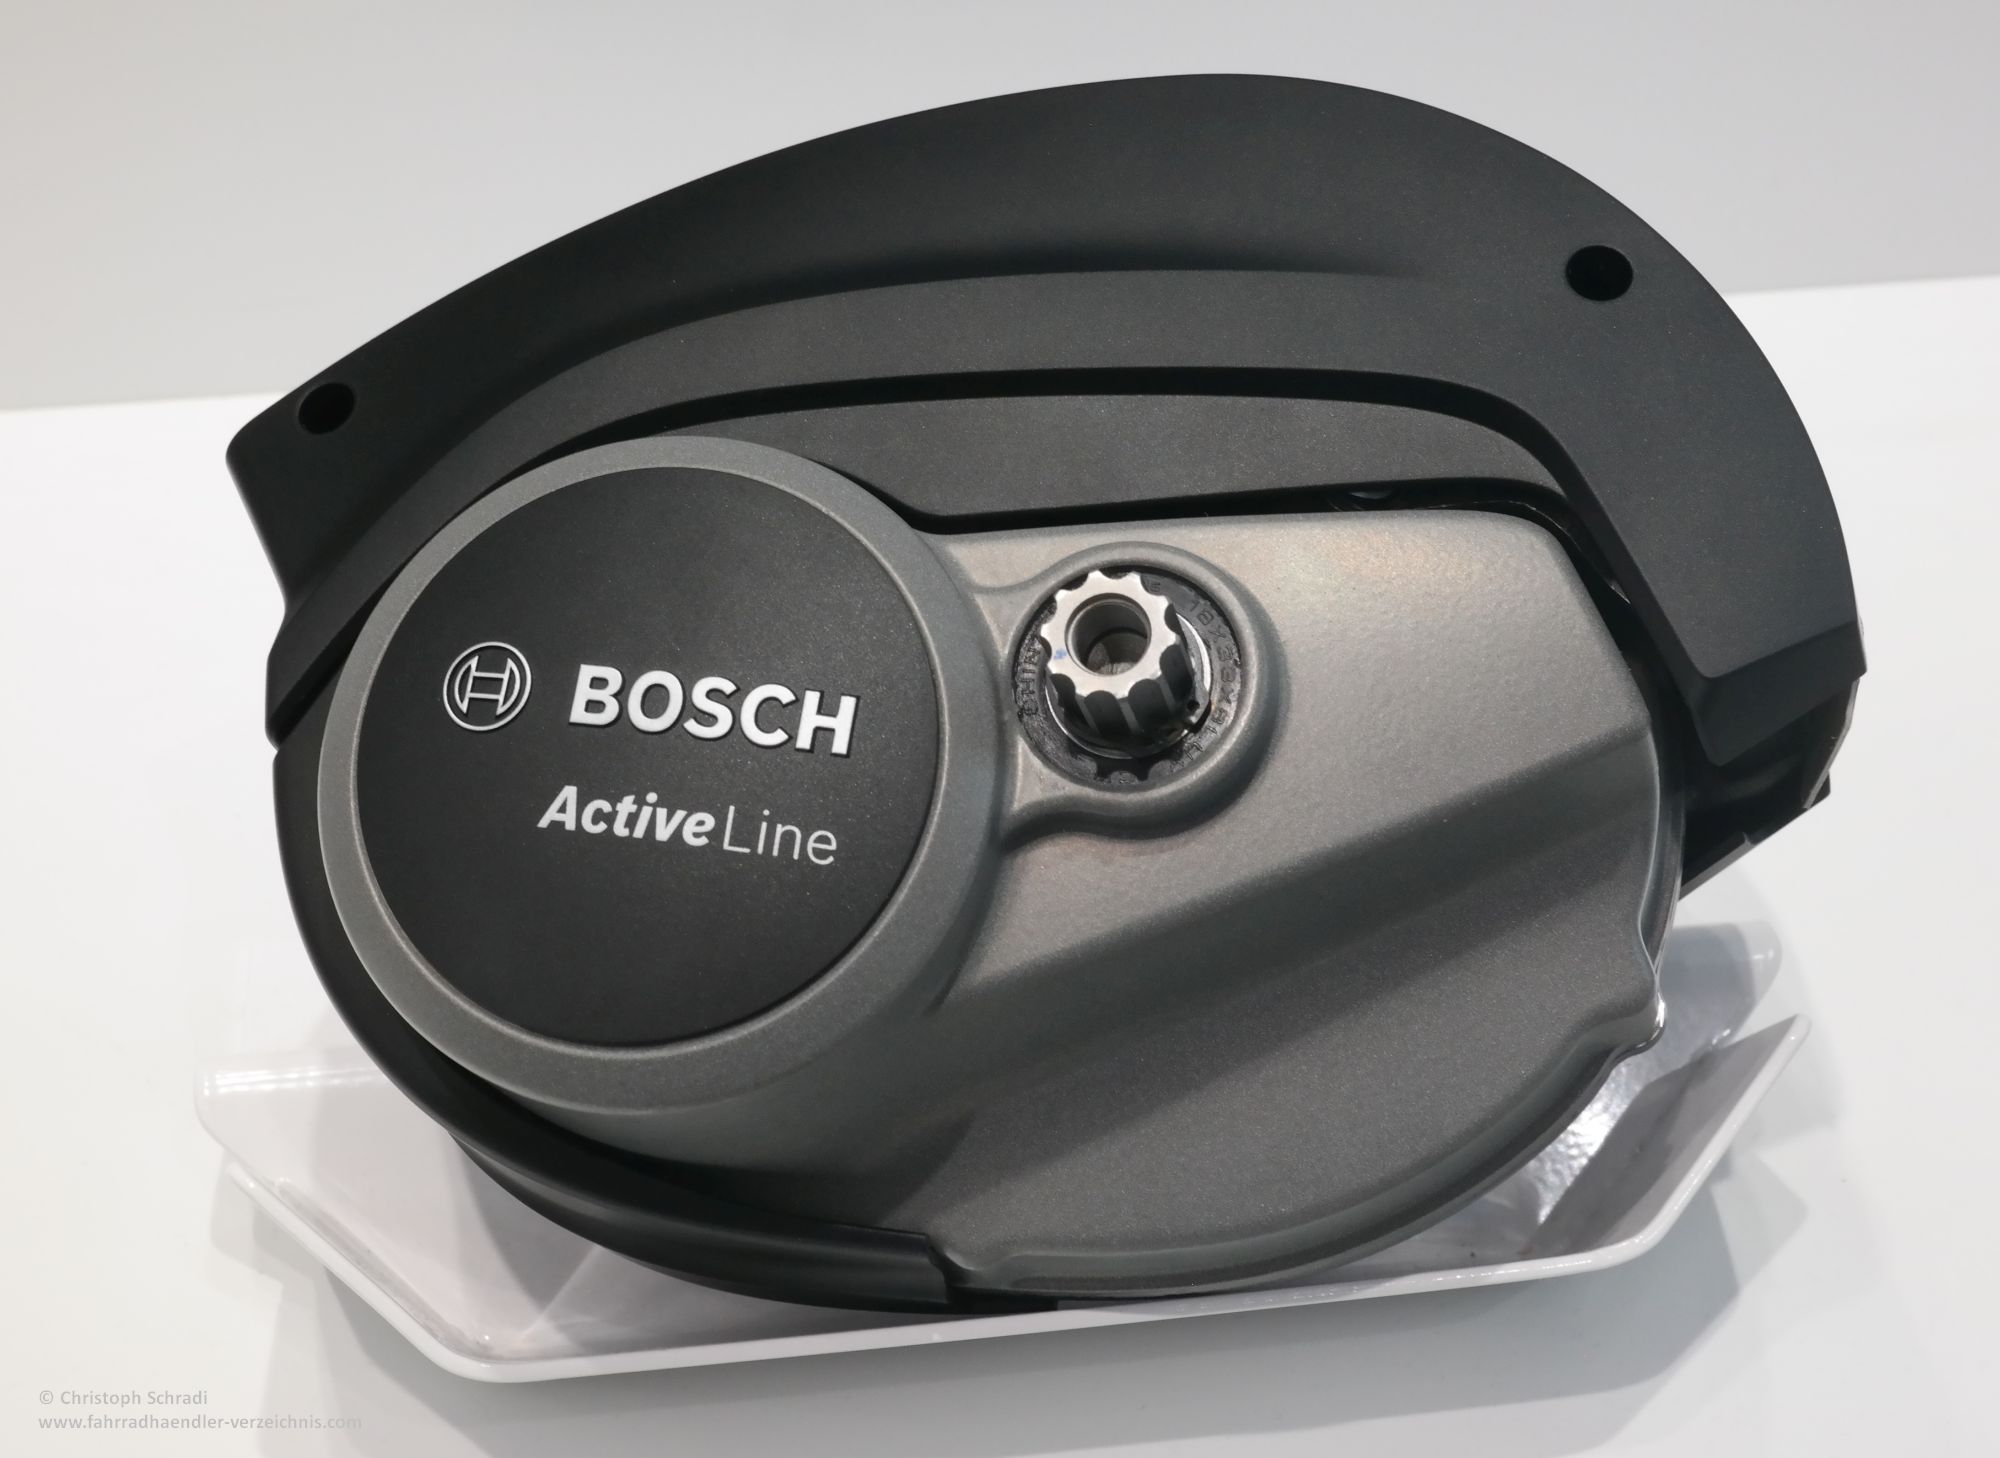 Bosch Active Line für 2018 mit umfassenden Änderung - weniger Kraft, leichterer Lauf, geringere Geräuschkulisse